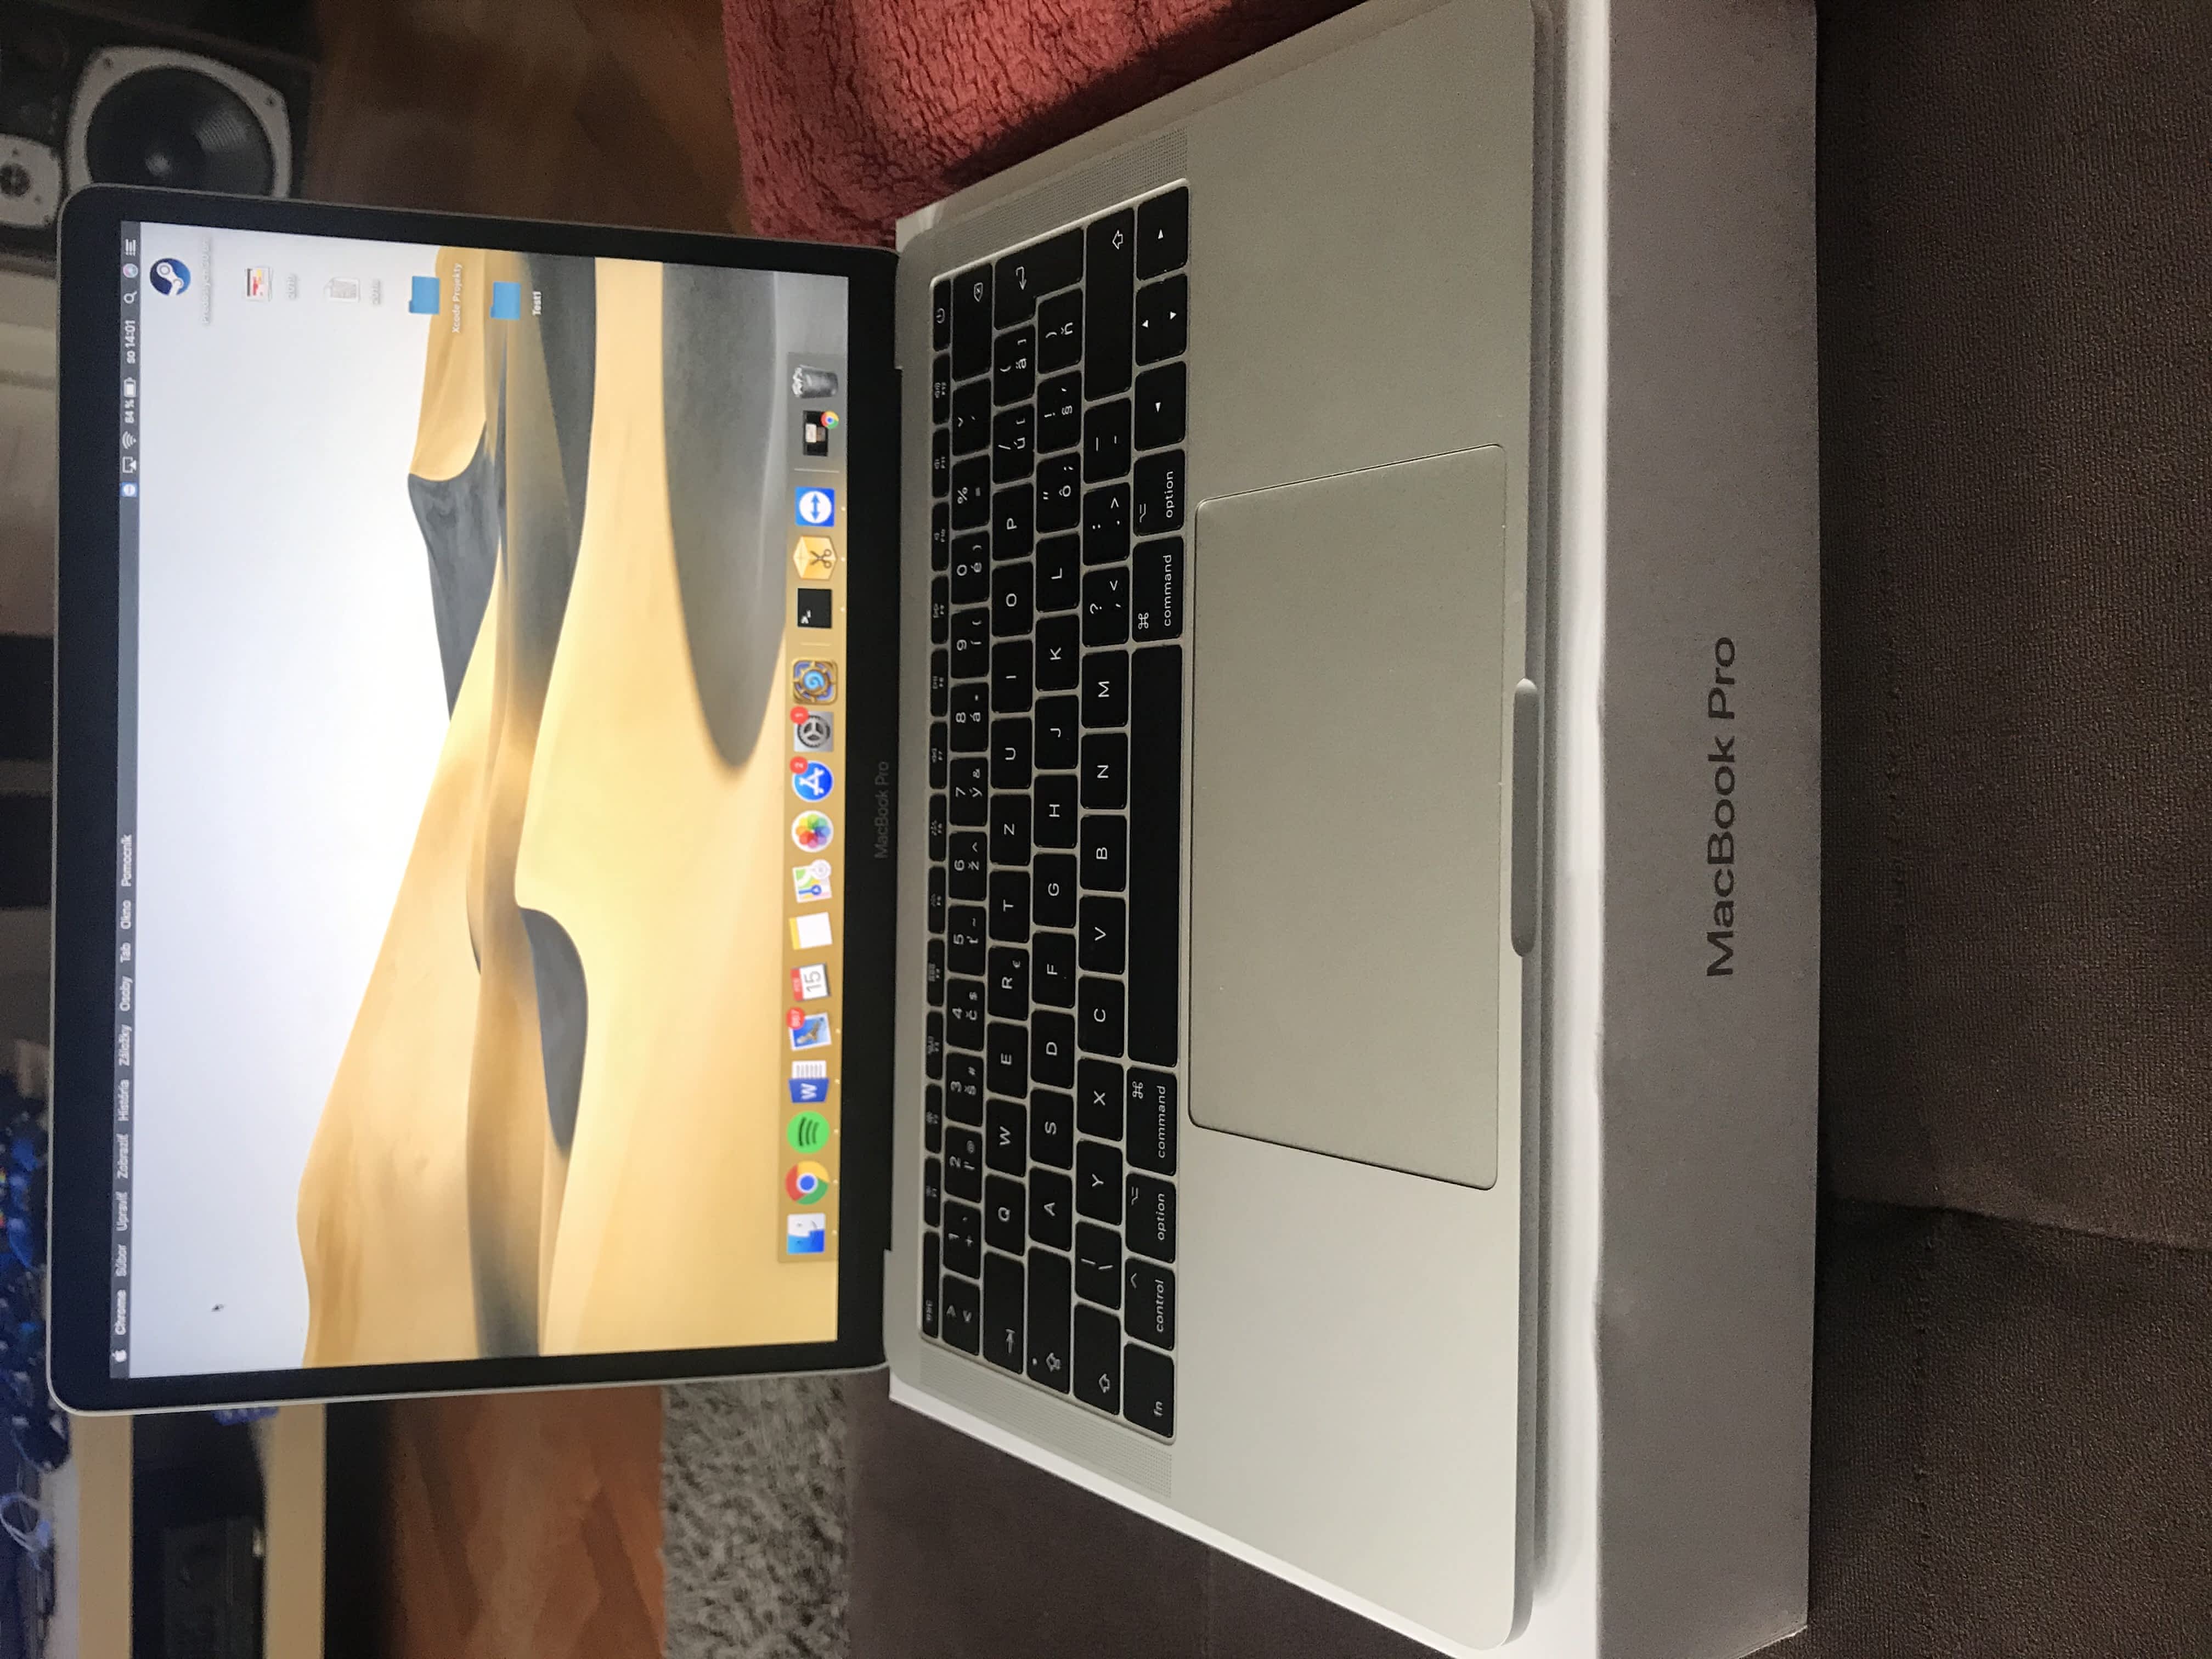 MacBook Pro 13" 2017, 128GB - Apple Bazar